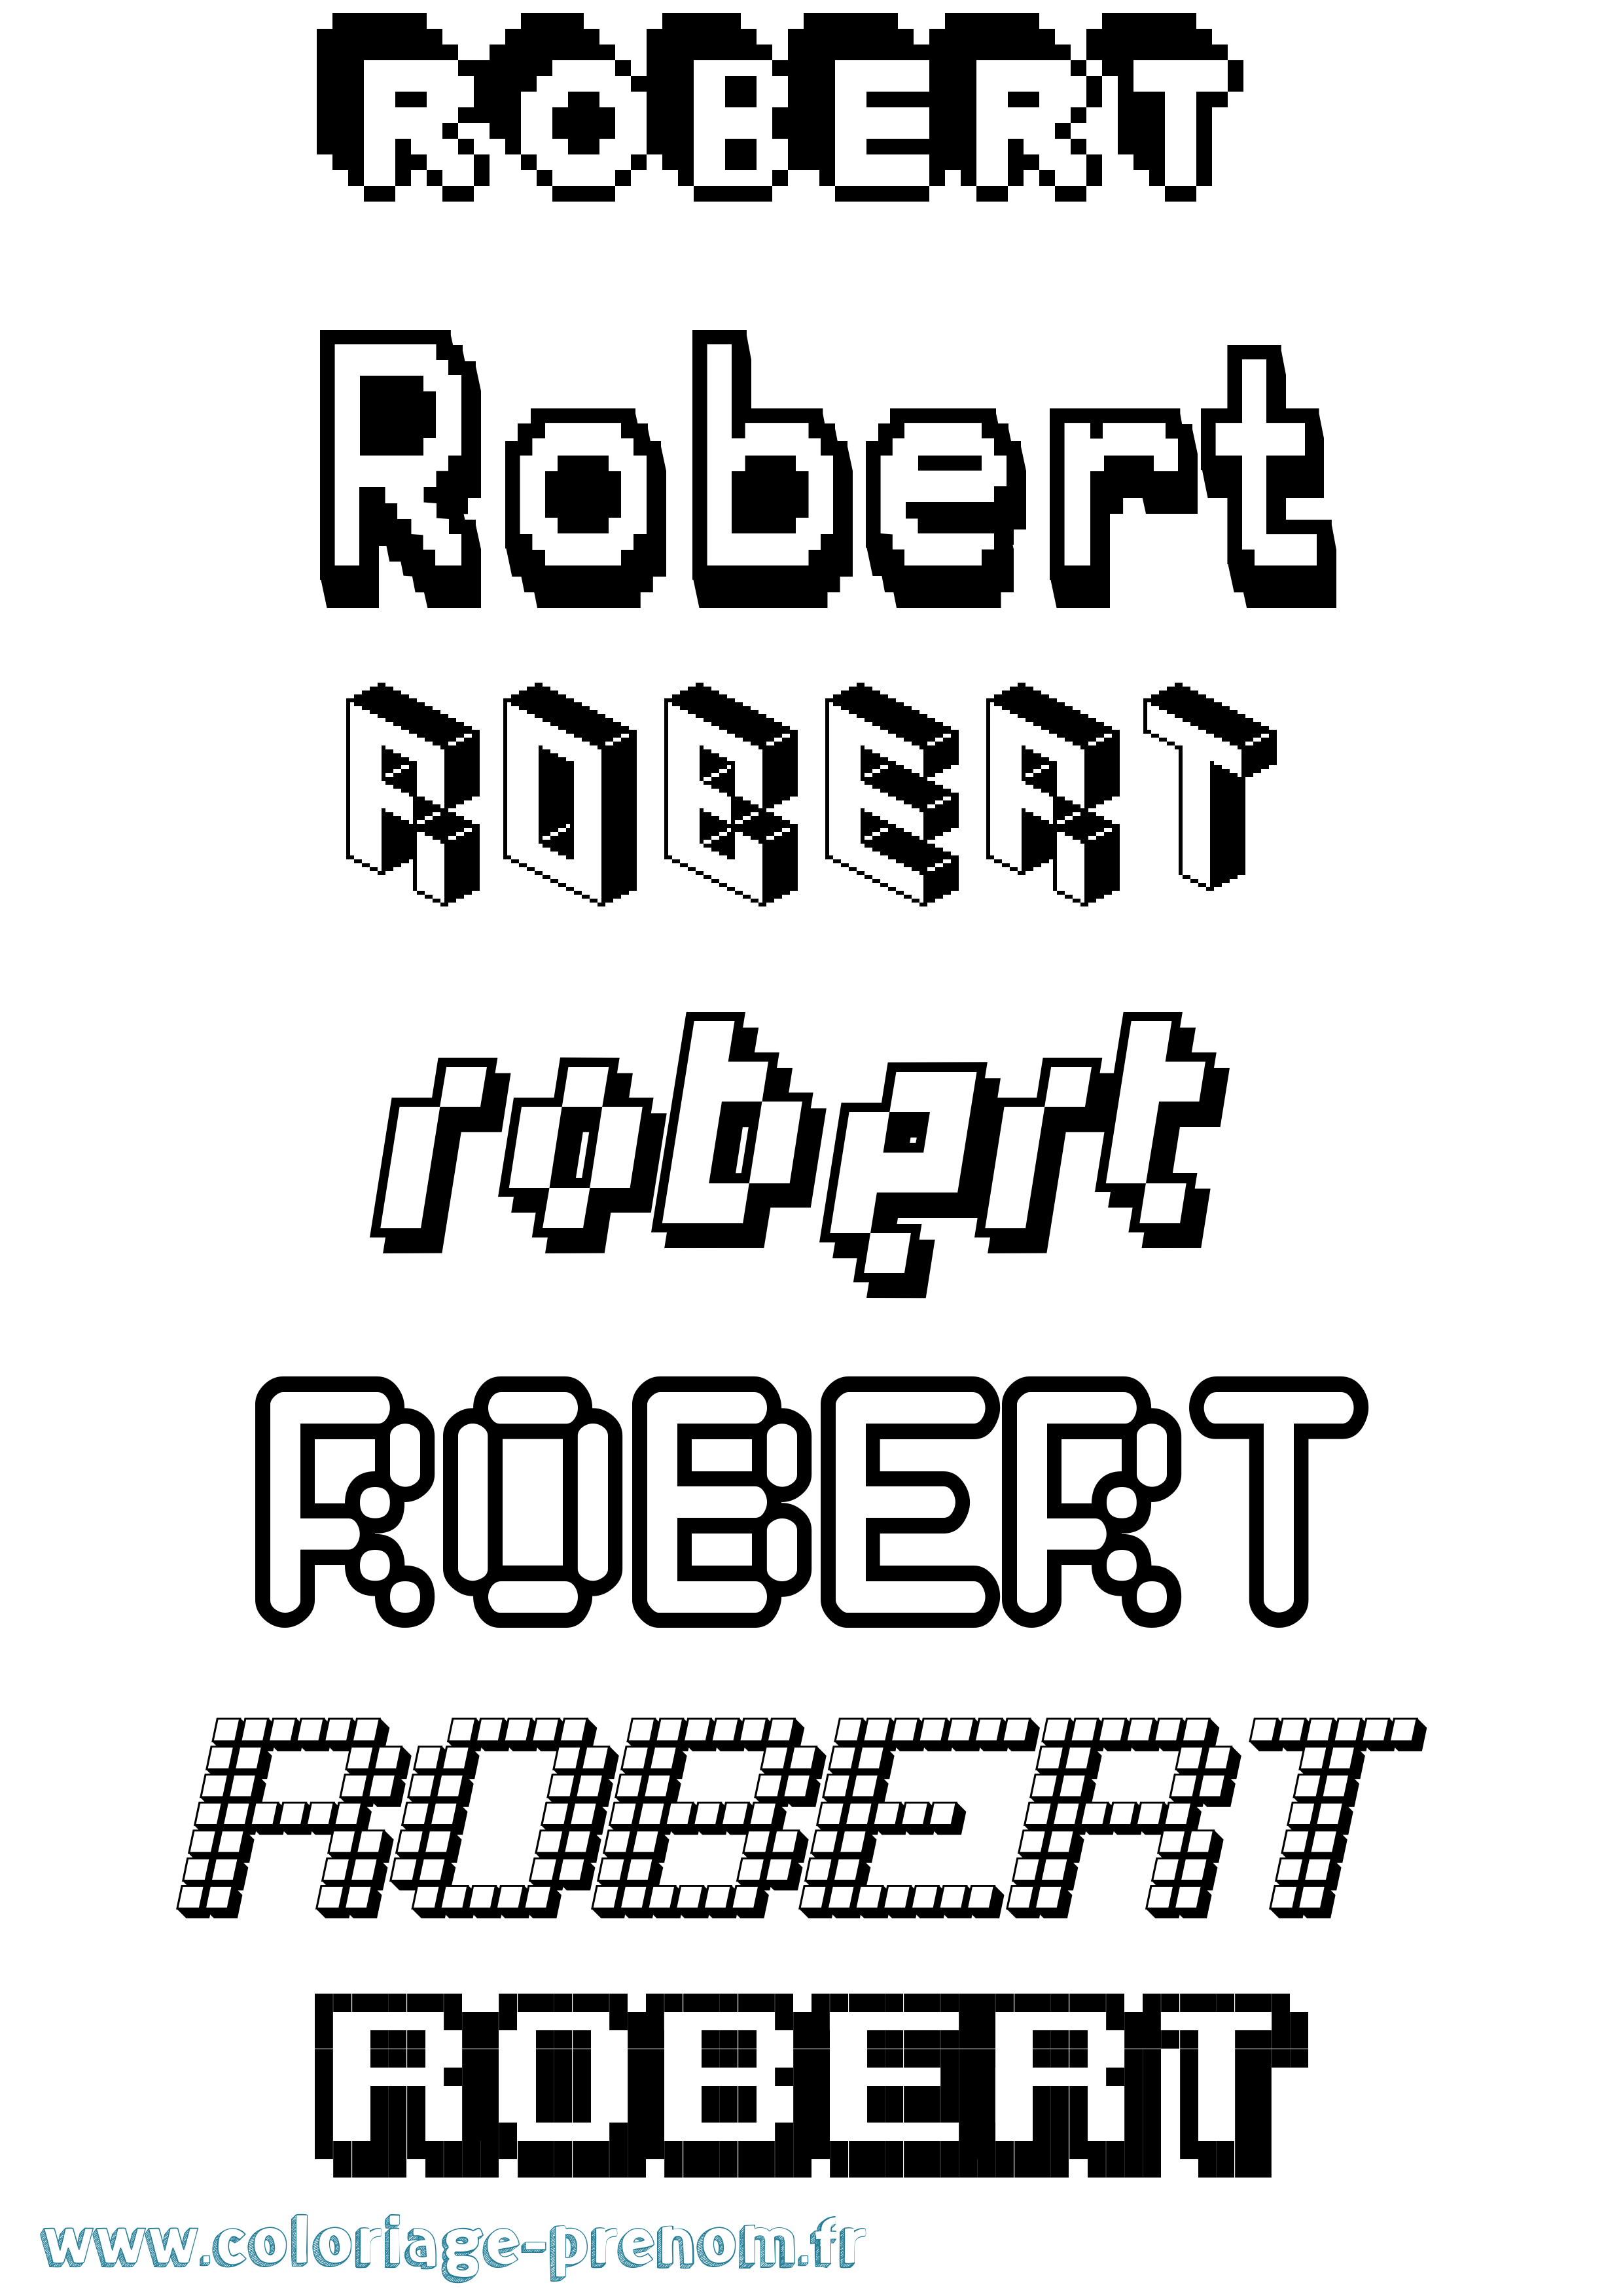 Coloriage prénom Robert